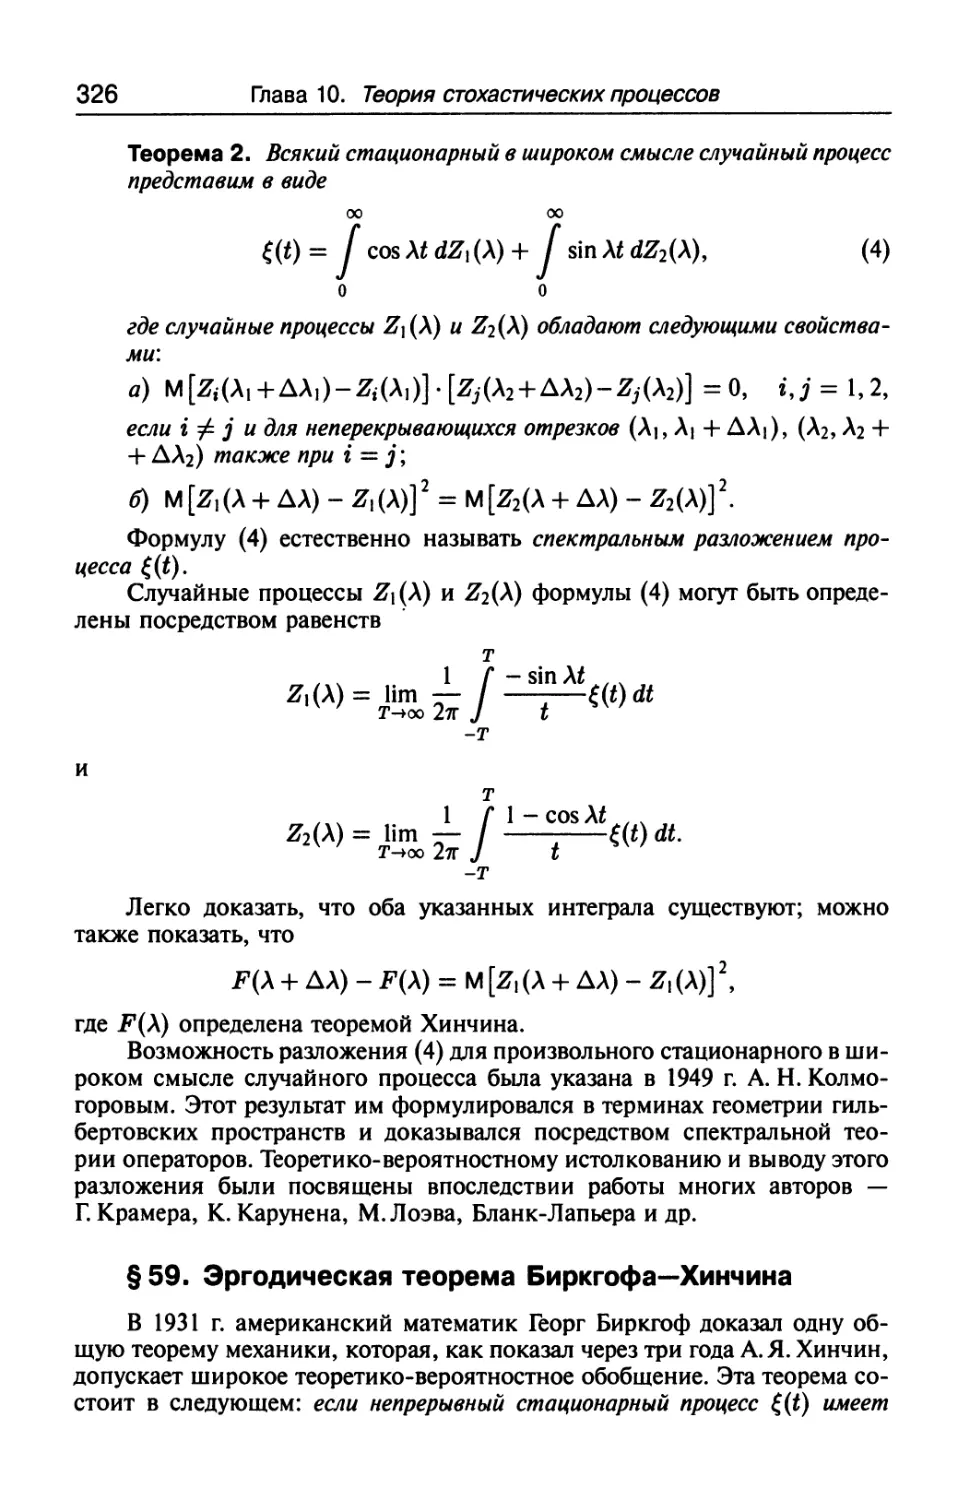 § 59. Эргодическая теорема Биркгофа-Хинчина